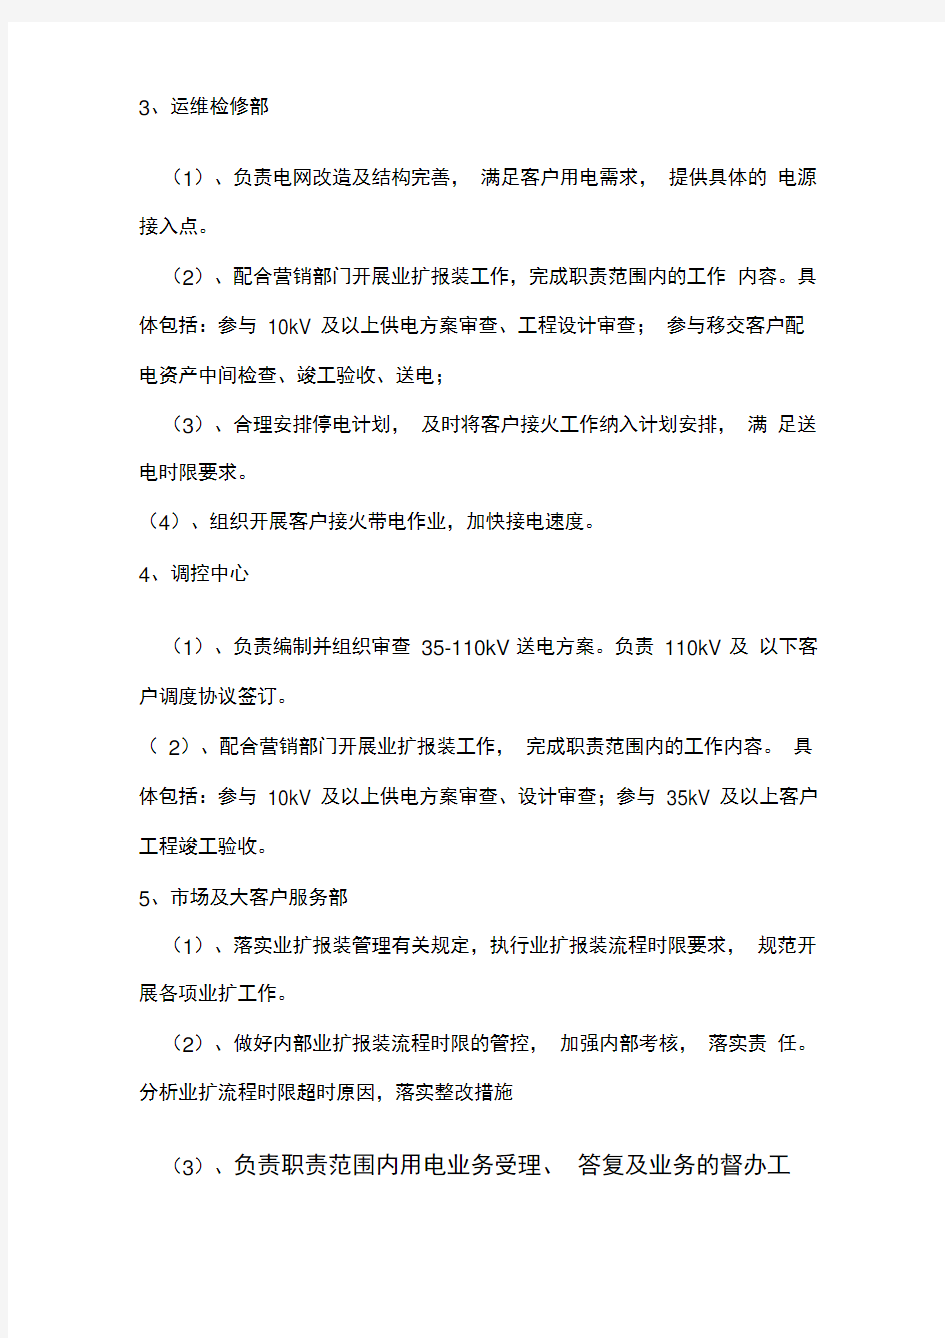 安庆供电公司业扩报装流程时限管理及考核实施细则(同名40347)